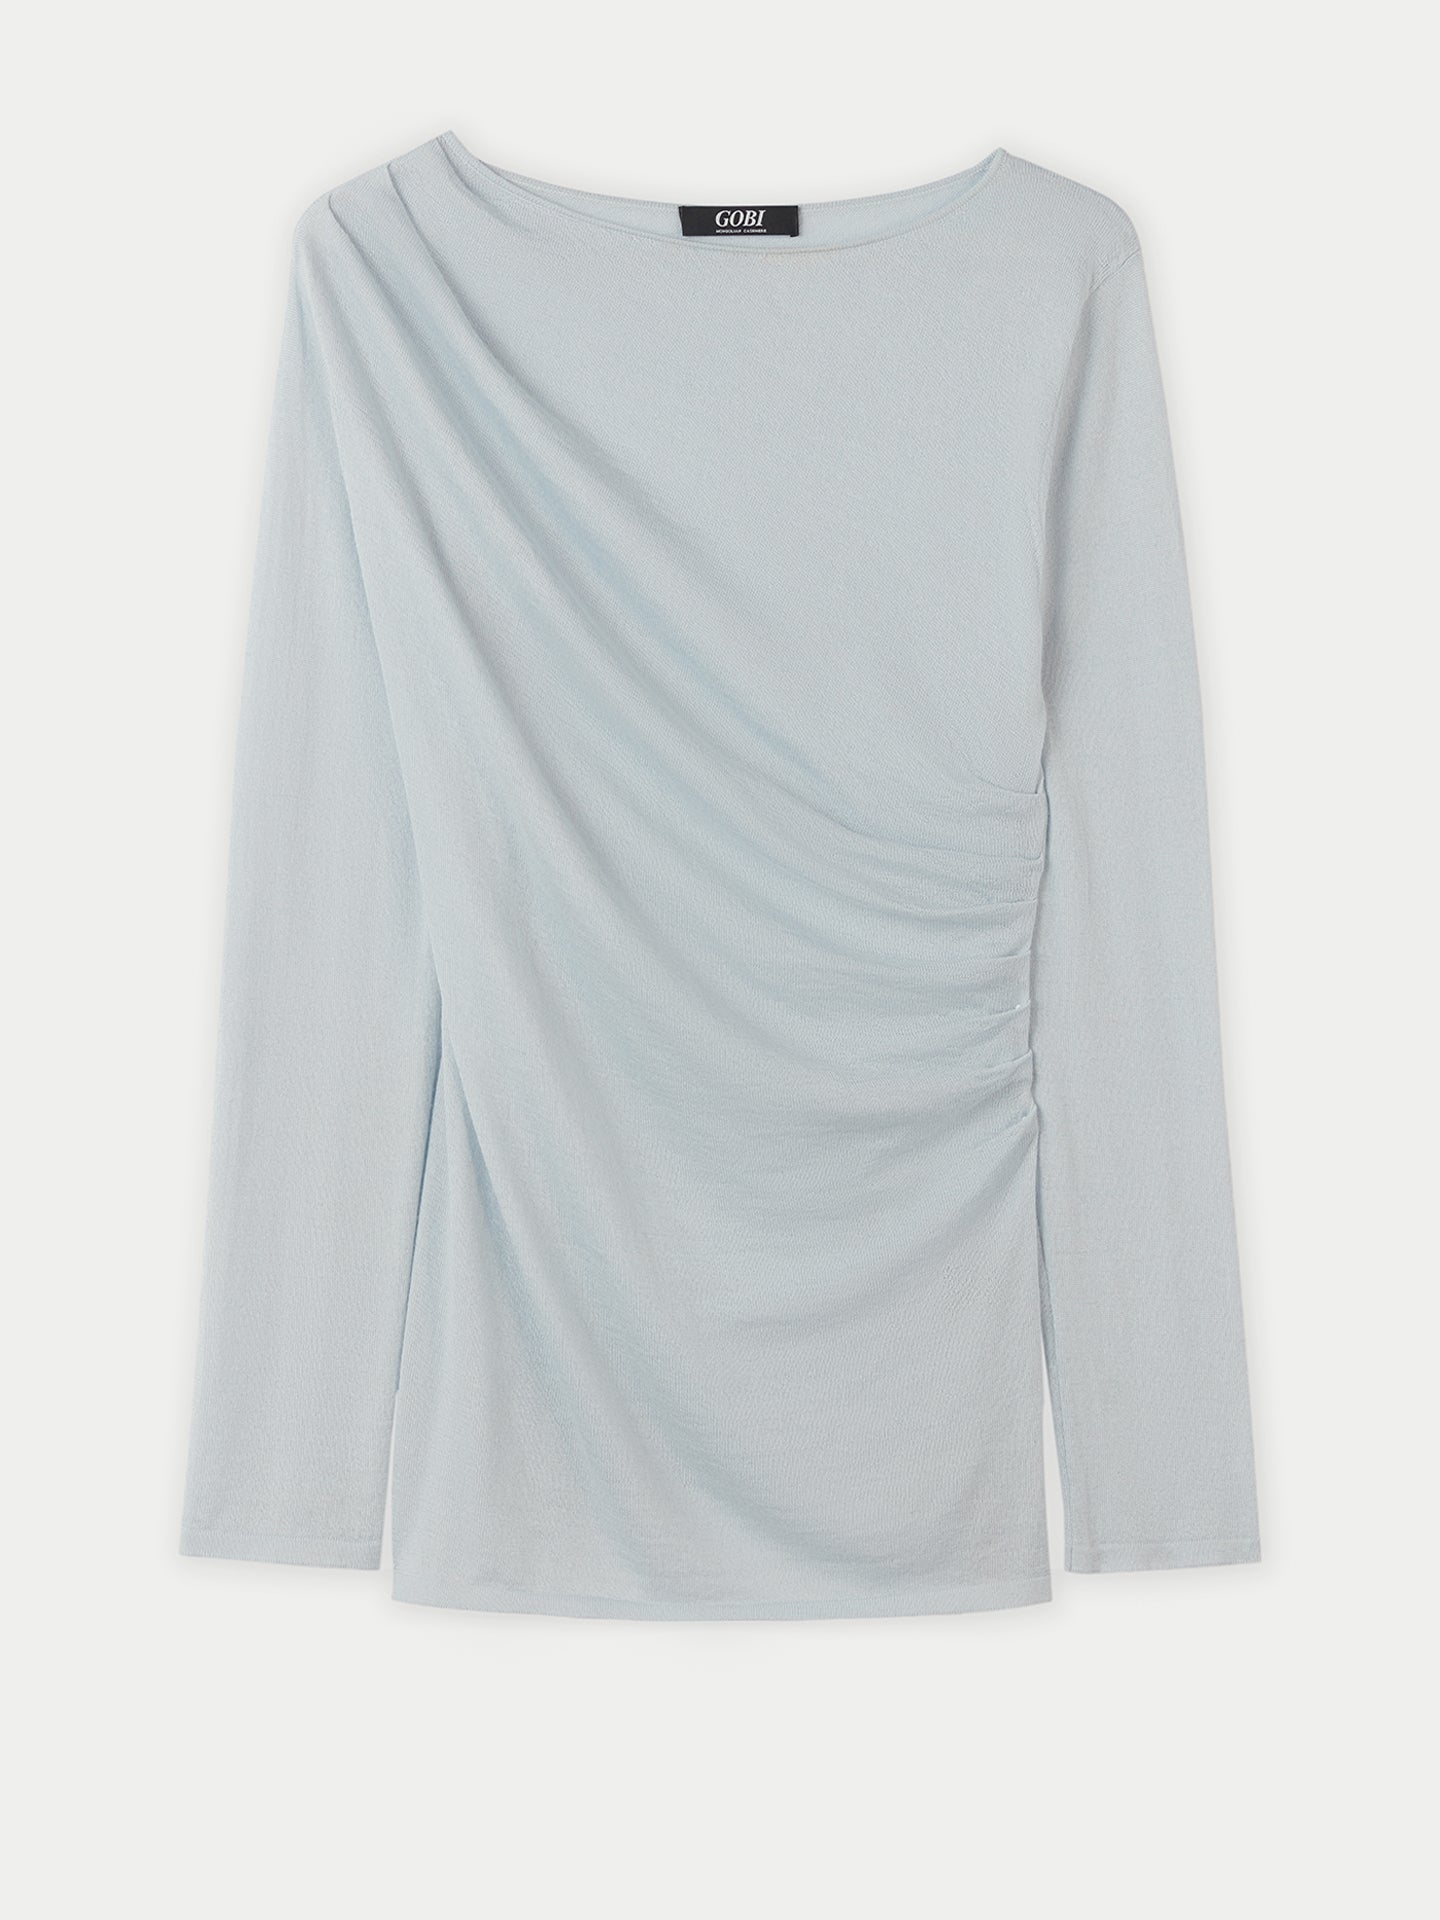 Women's Silk Cashmere C-neck Ice Flow - Gobi Cashmere